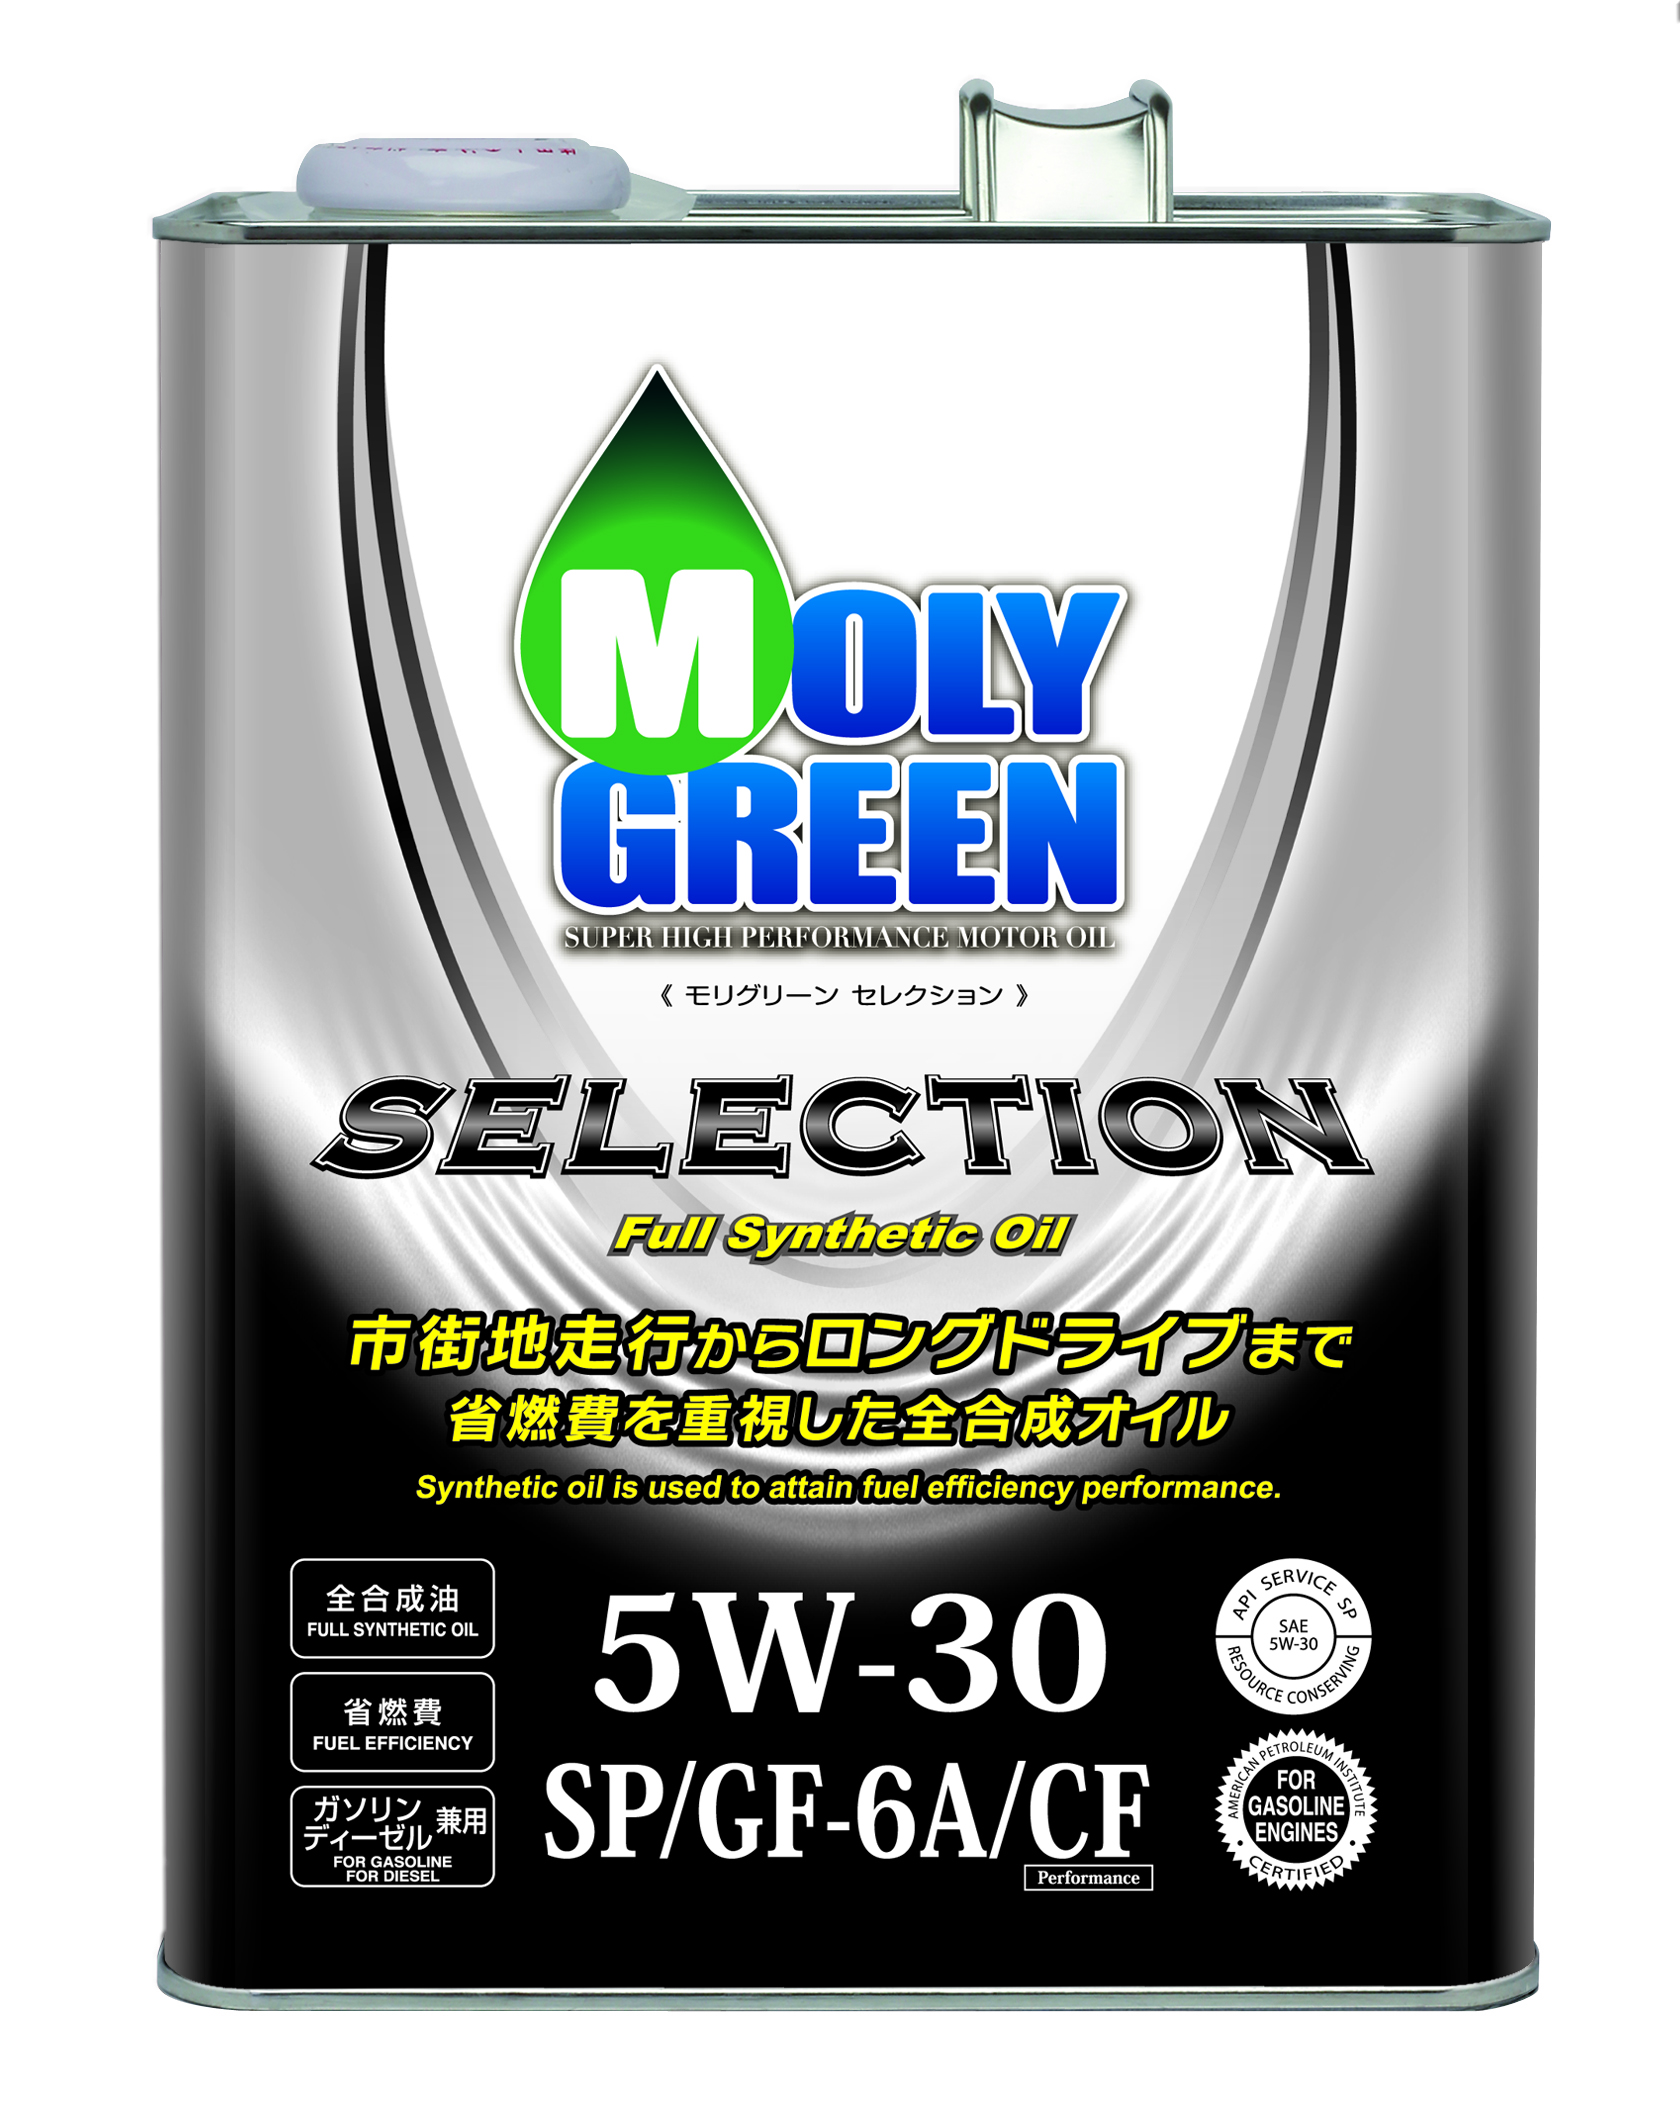 モリグリーン 5W-30 セレクションSP